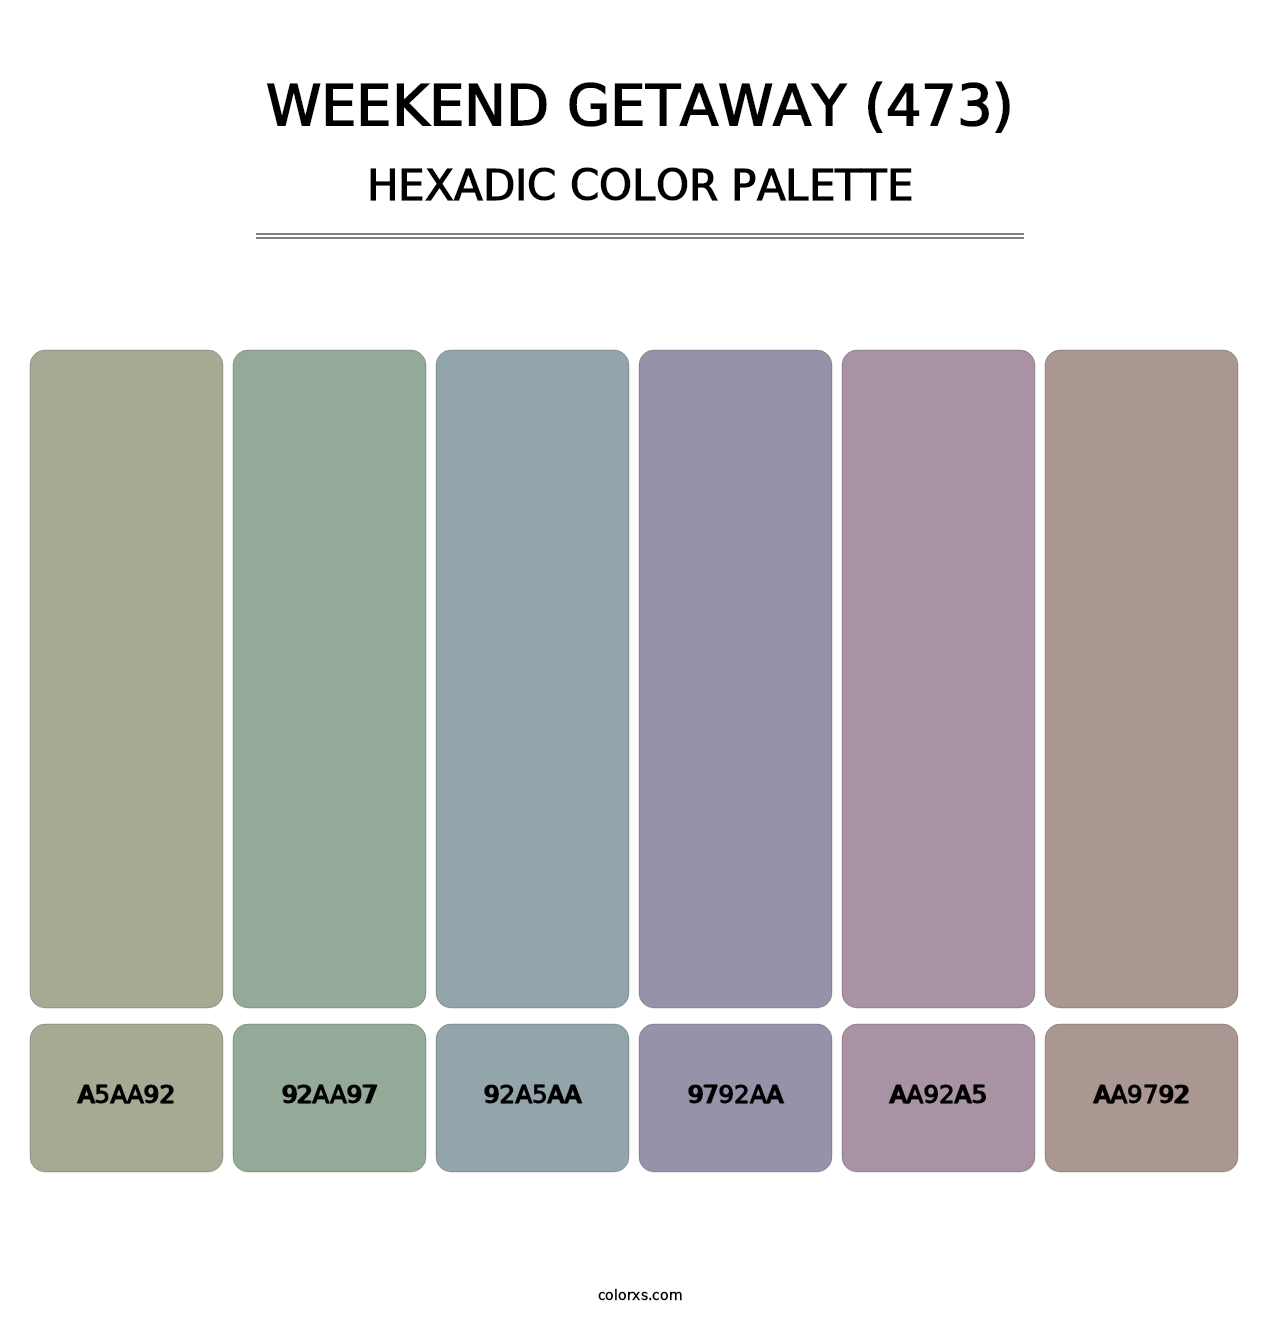 Weekend Getaway (473) - Hexadic Color Palette